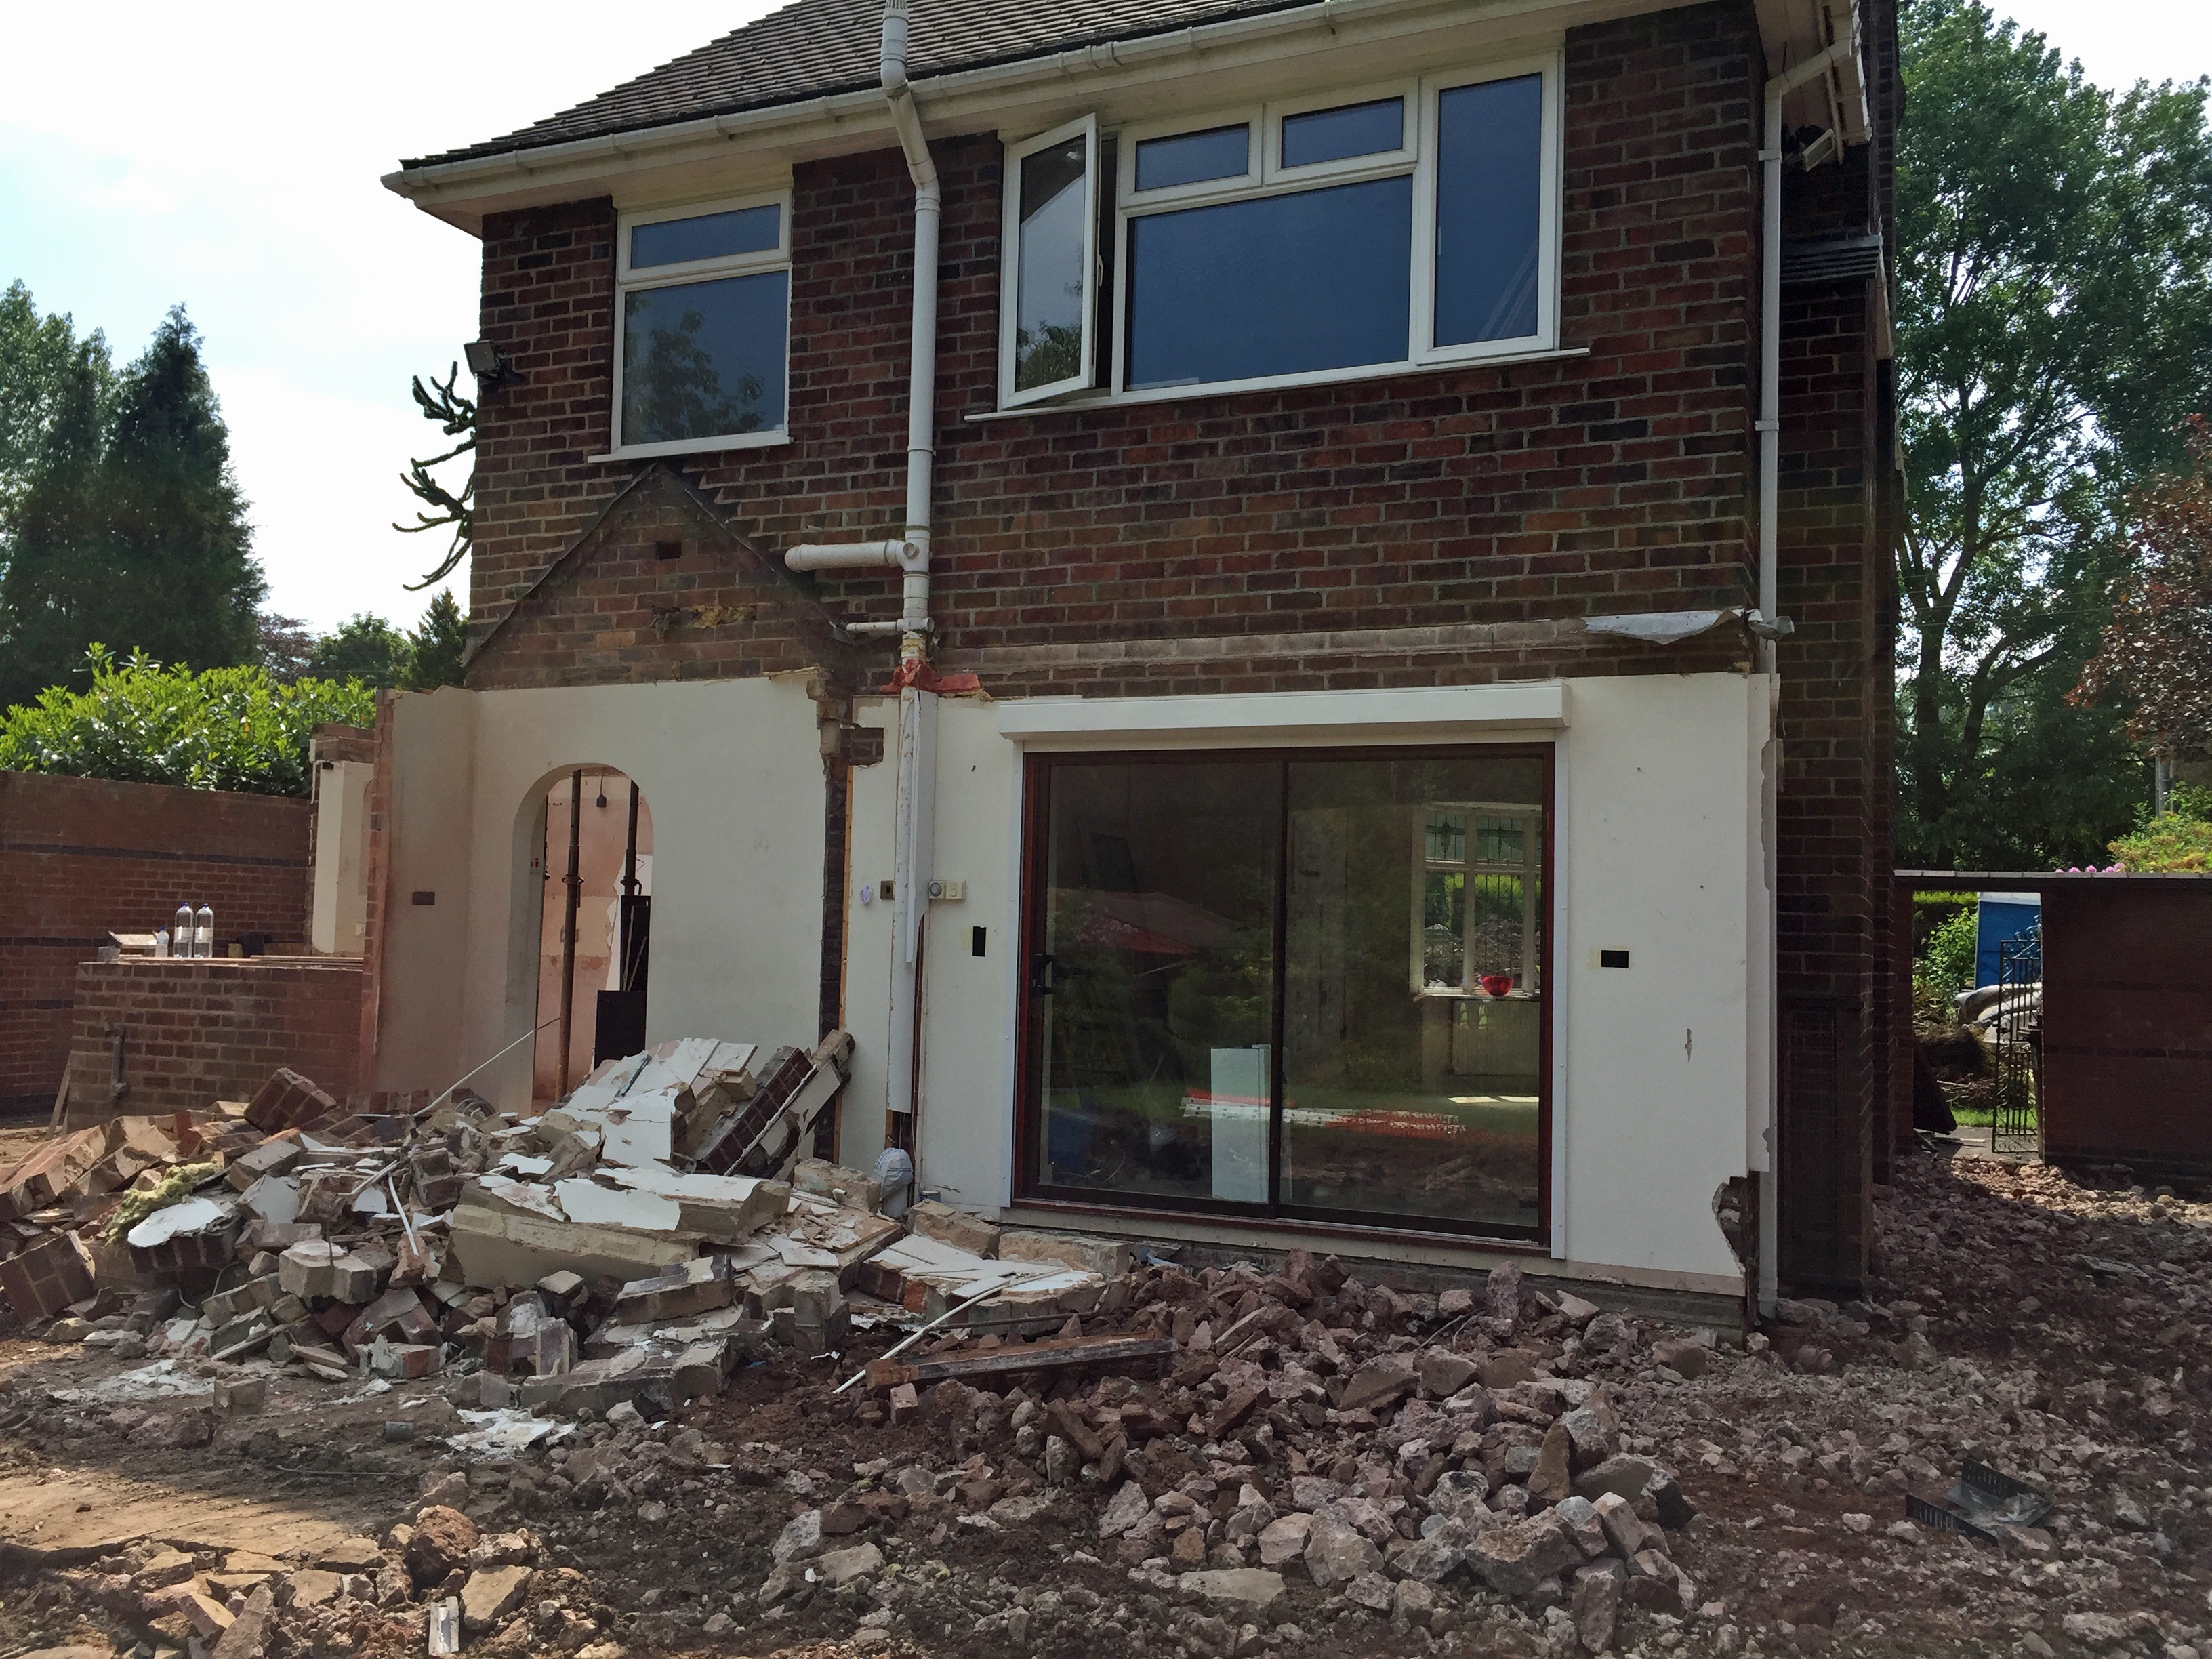 Home renovation blog: Demolition begins